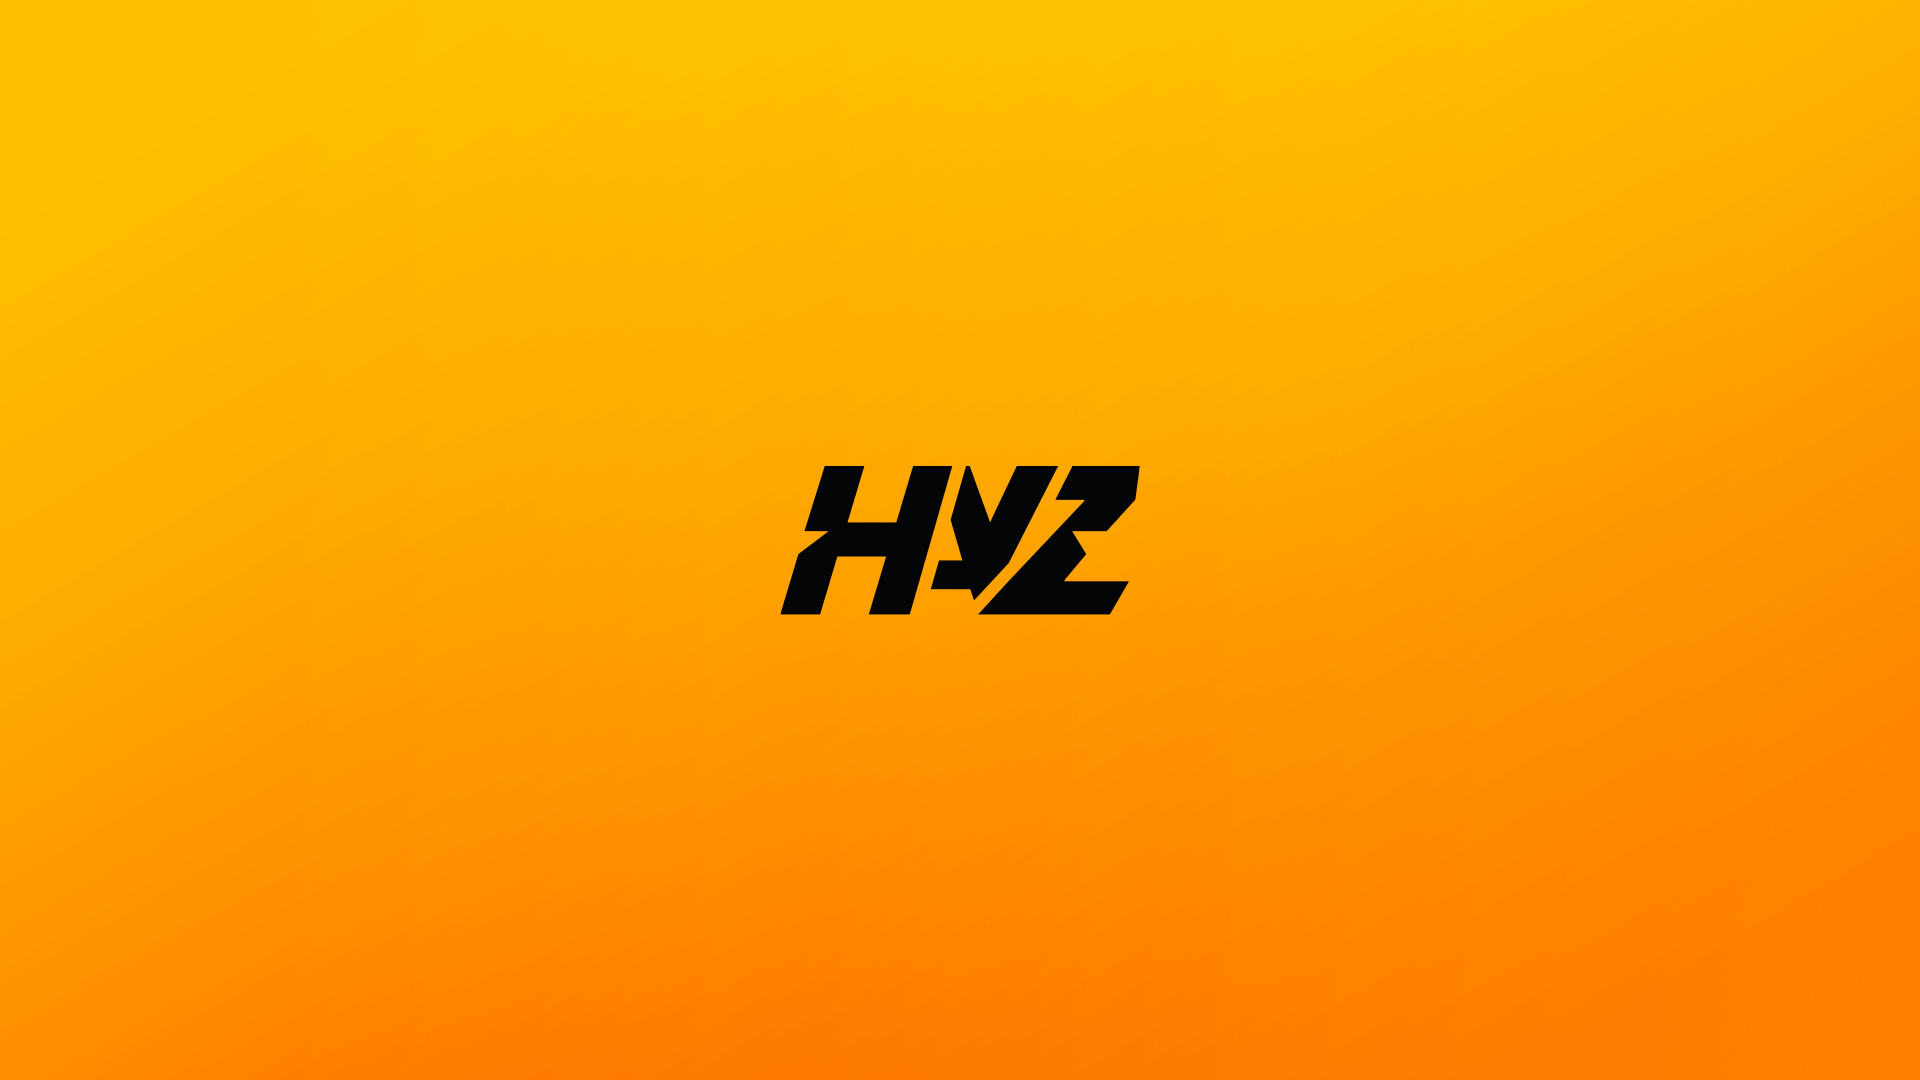 HayZ-Webpage-Background_Background